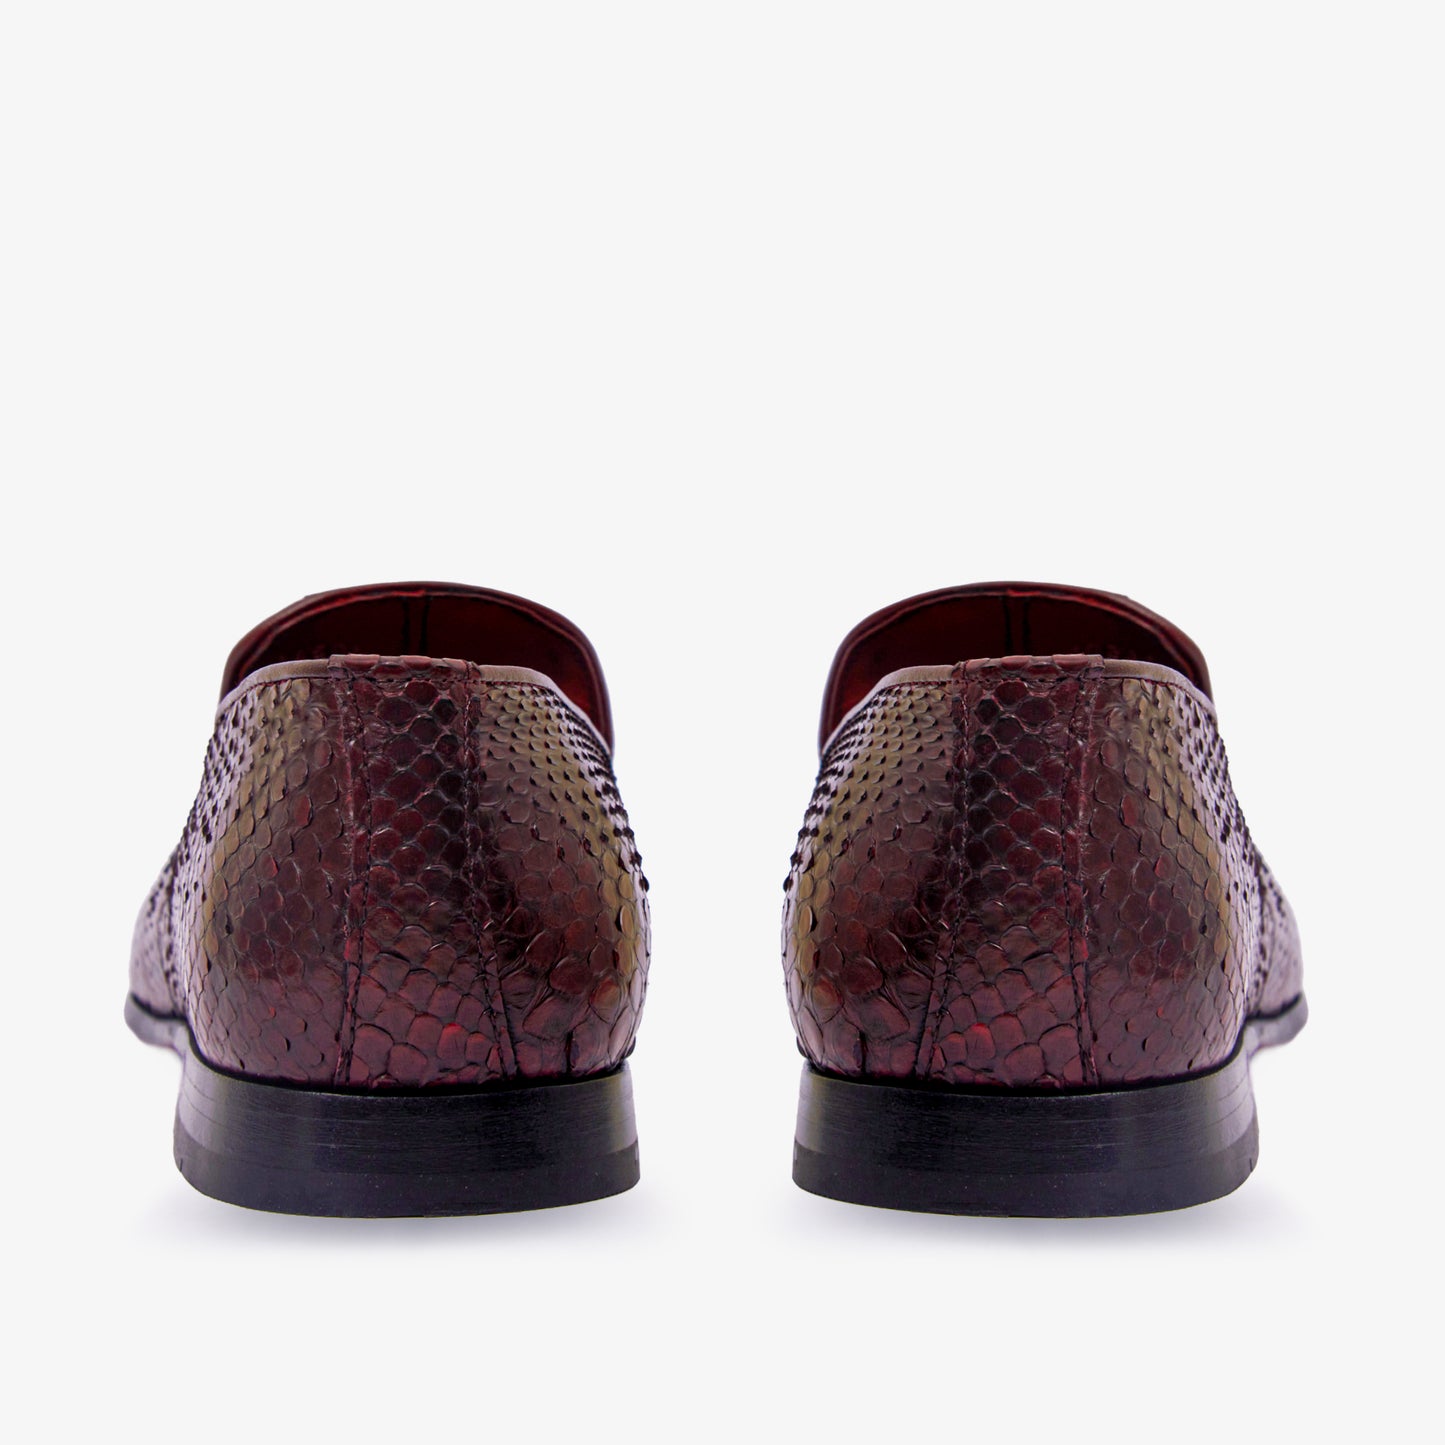 The Bethesda Burgundy Pyhtn Skin Leather Tassel Loafer Men Shoe